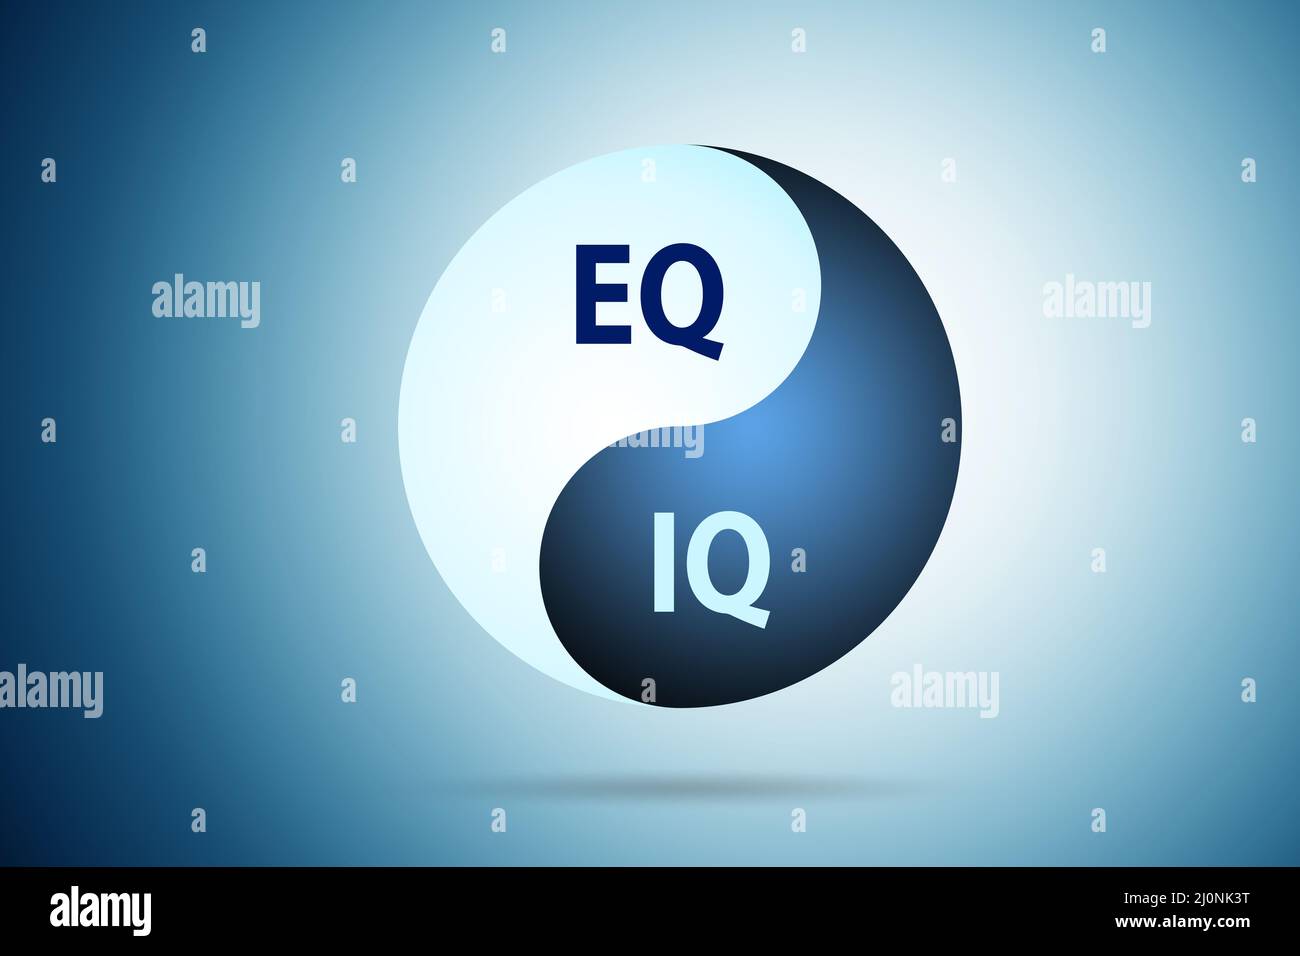 EQ and IQ skill concepts Stock Photo